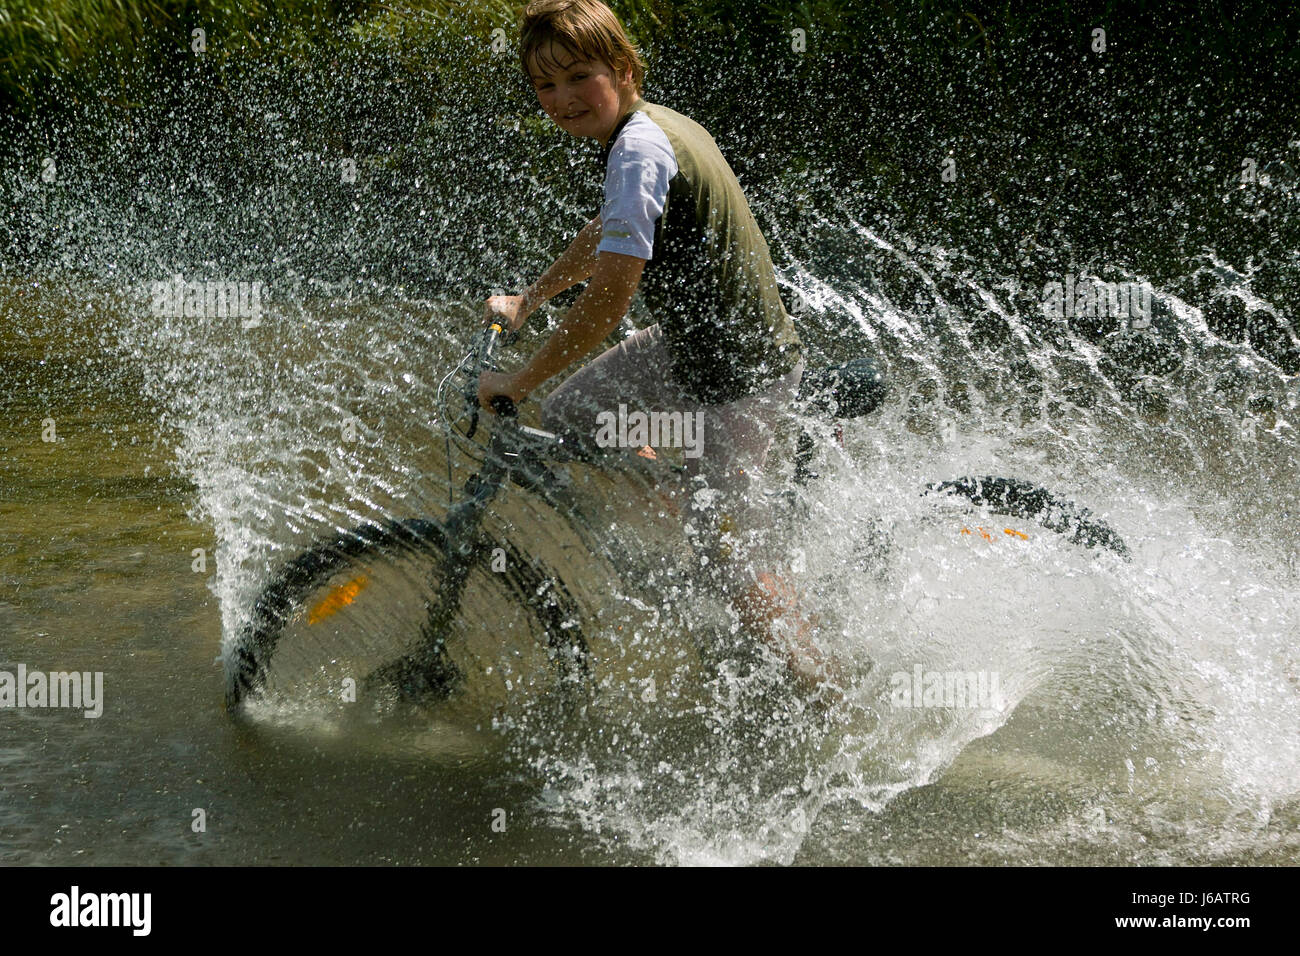 ford jugendlicher junge quotmountain bikequot bikingtour outdoor drauen Stock Photo